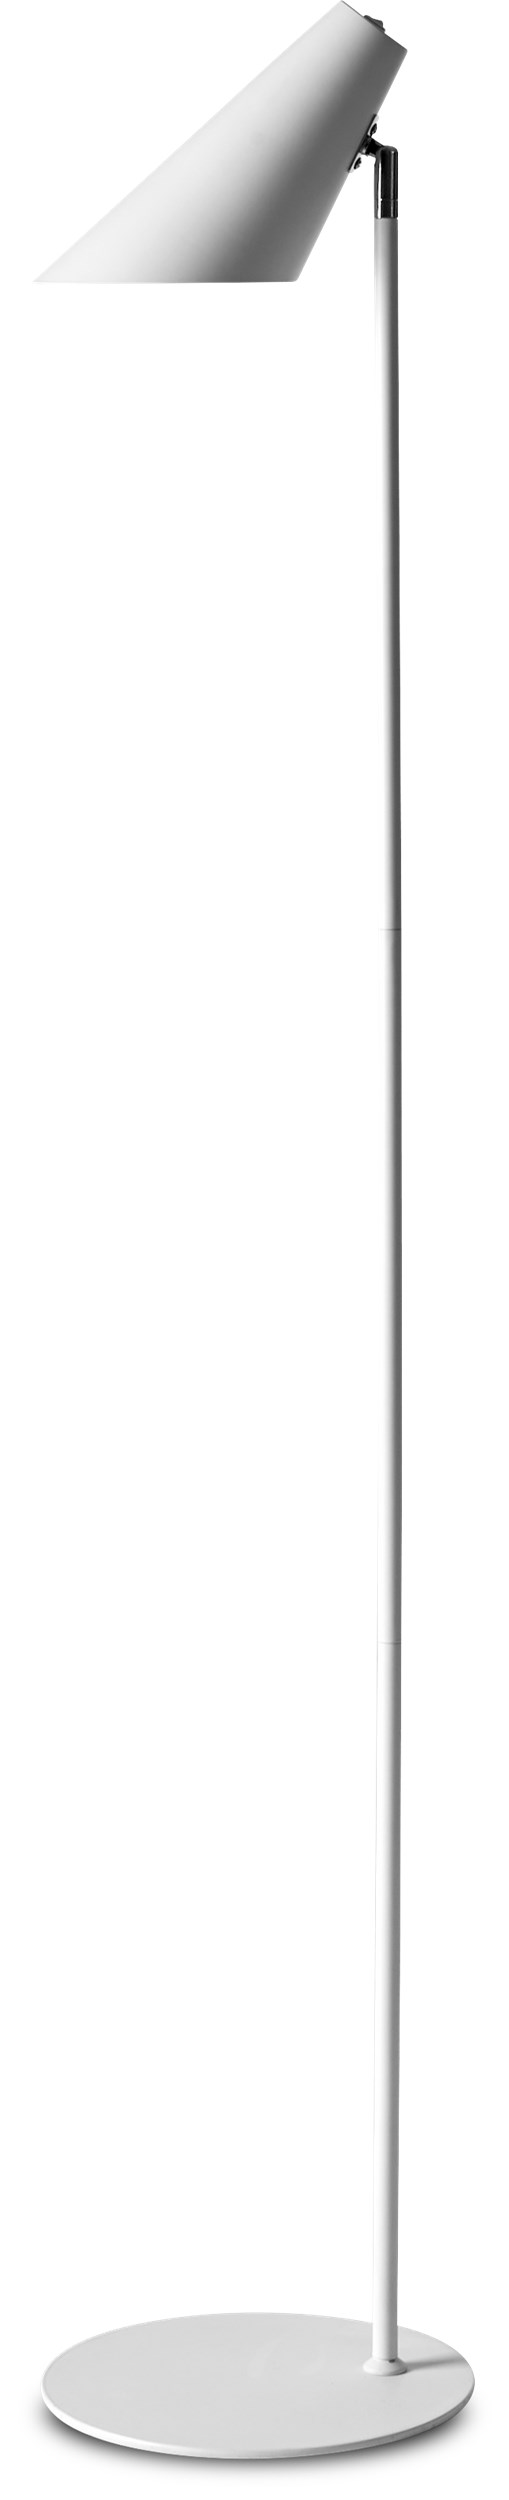 Cale Gulvlampe 135 x 15,5 cm - Hvid metalskærm/base, stang i hvid/krom og hvid tekstilledning